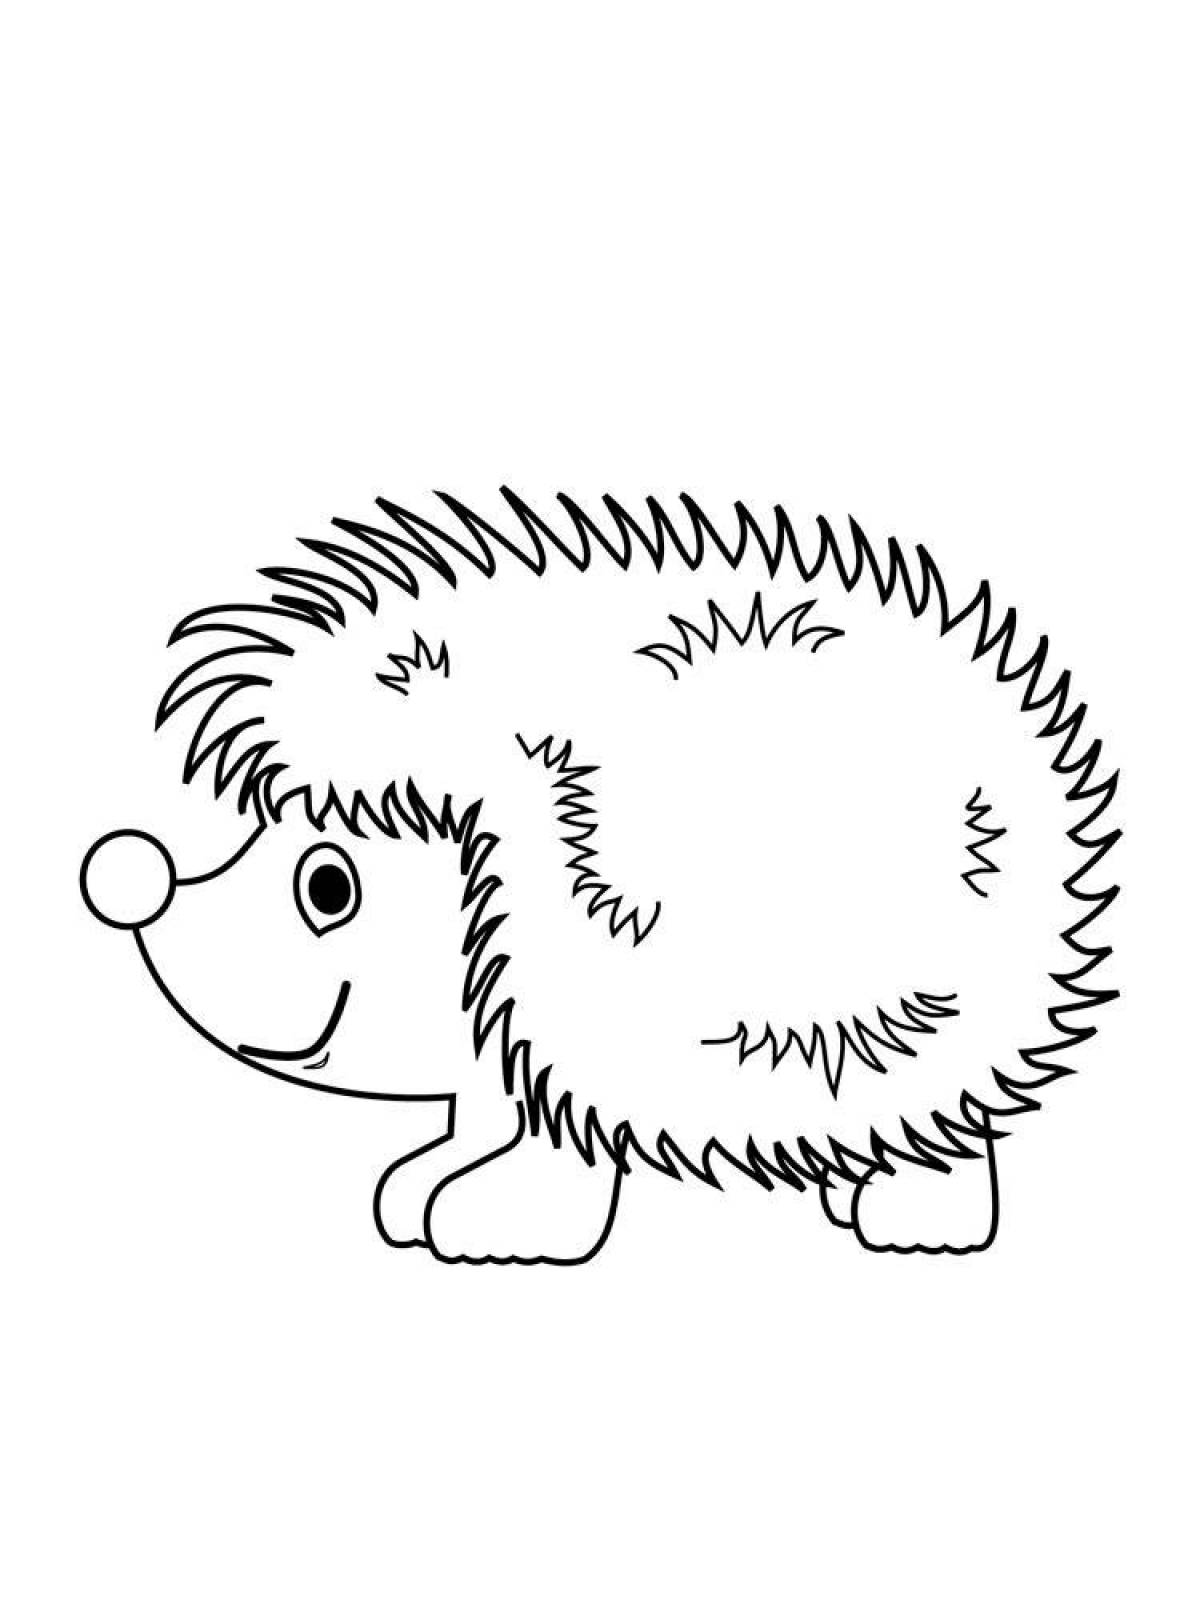 Live hedgehog coloring book for kids